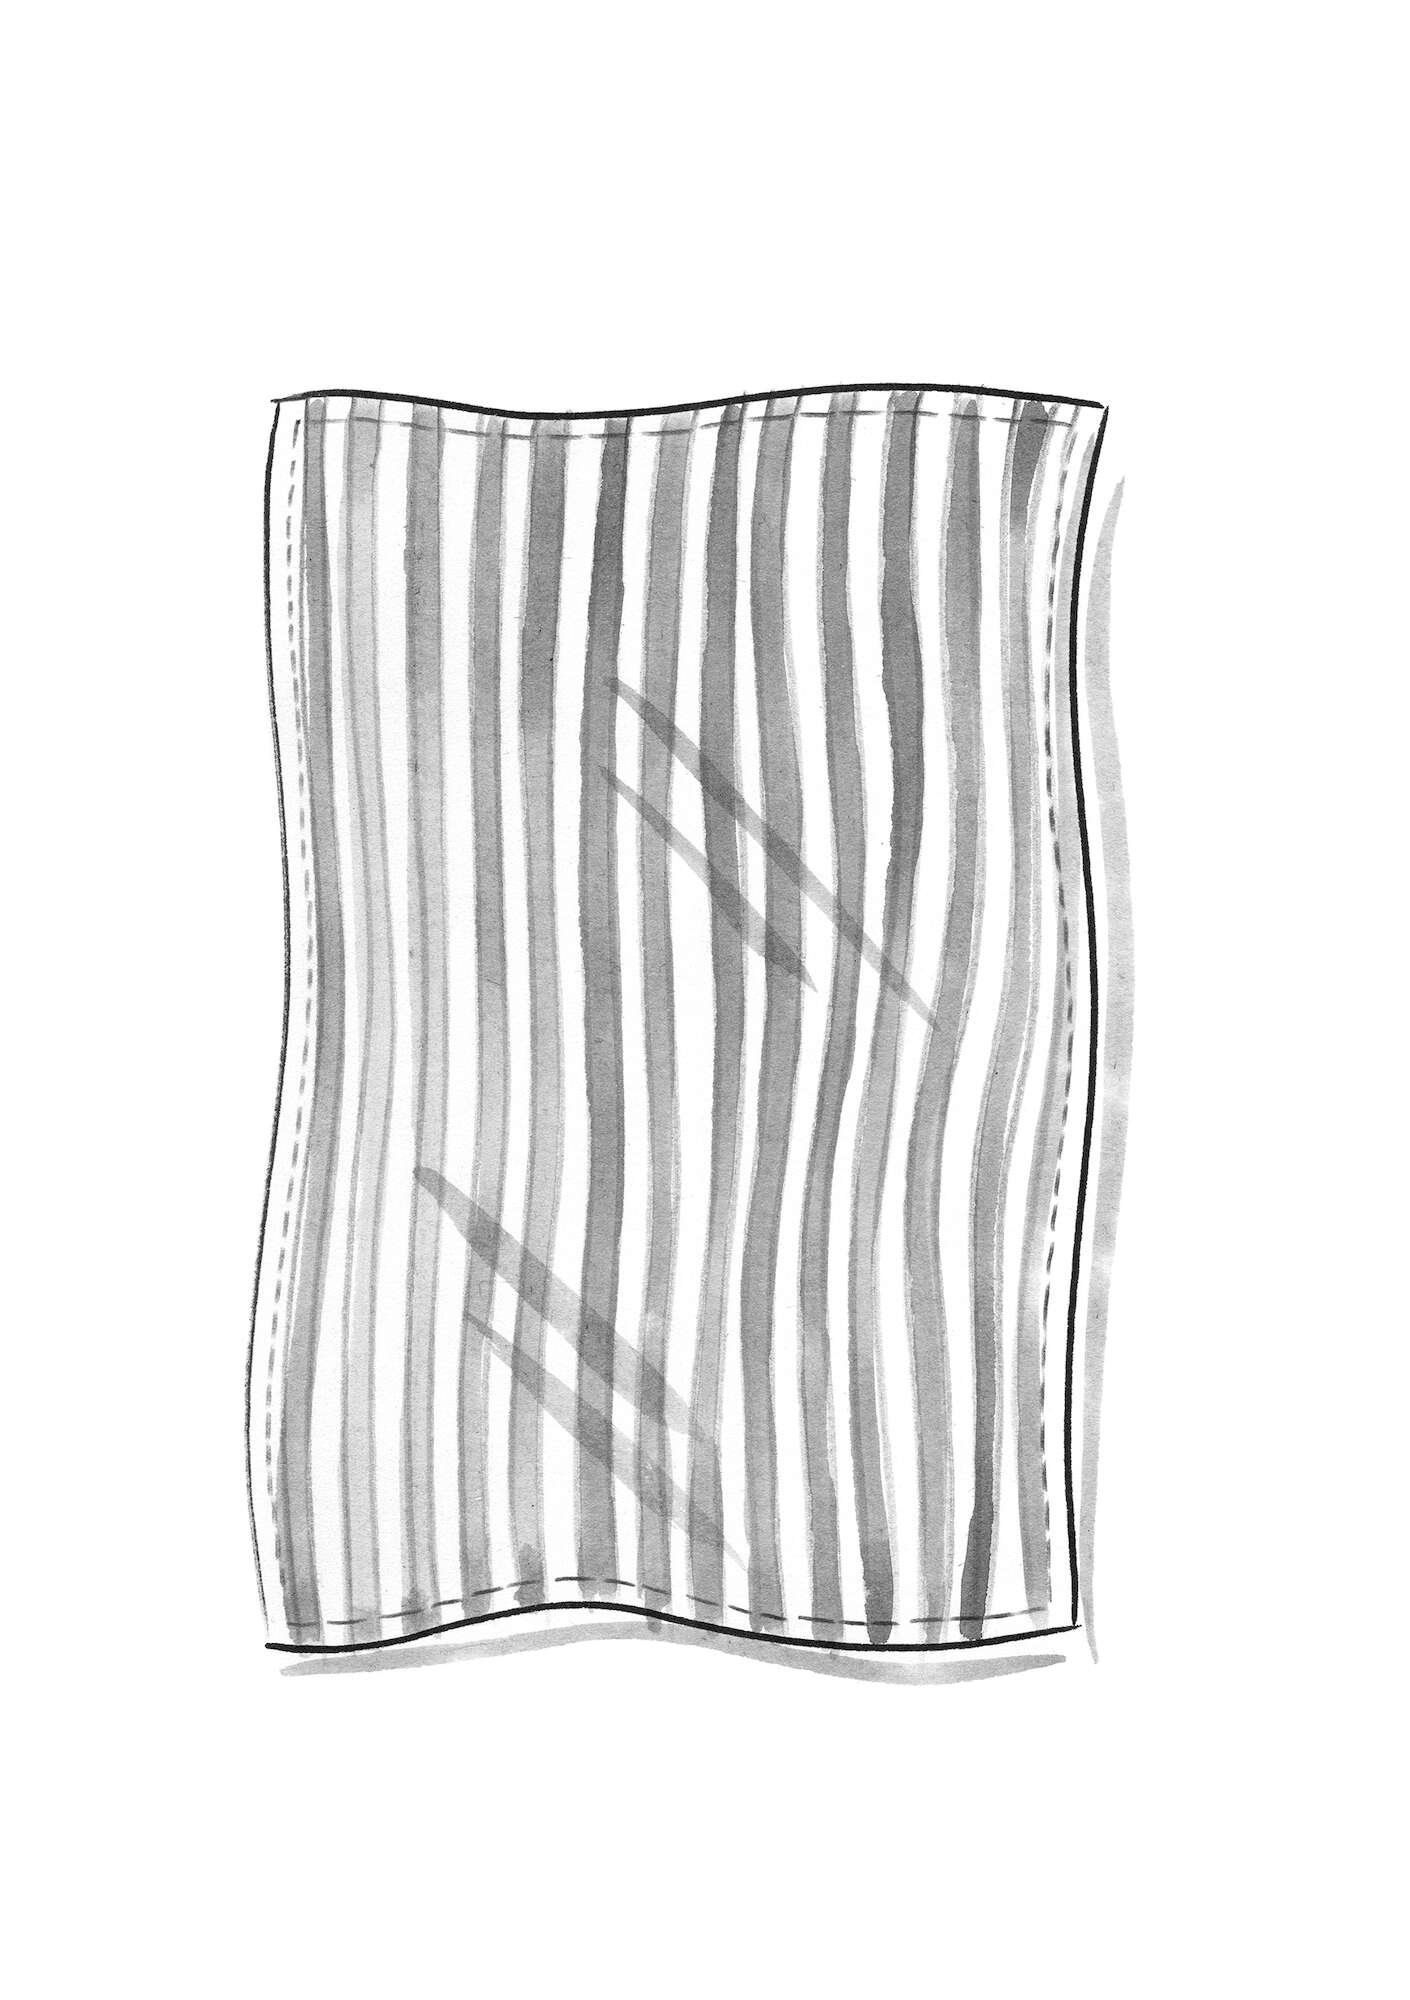 Tischdecke „Långrand“ aus Öko-Baumwolle schwarz